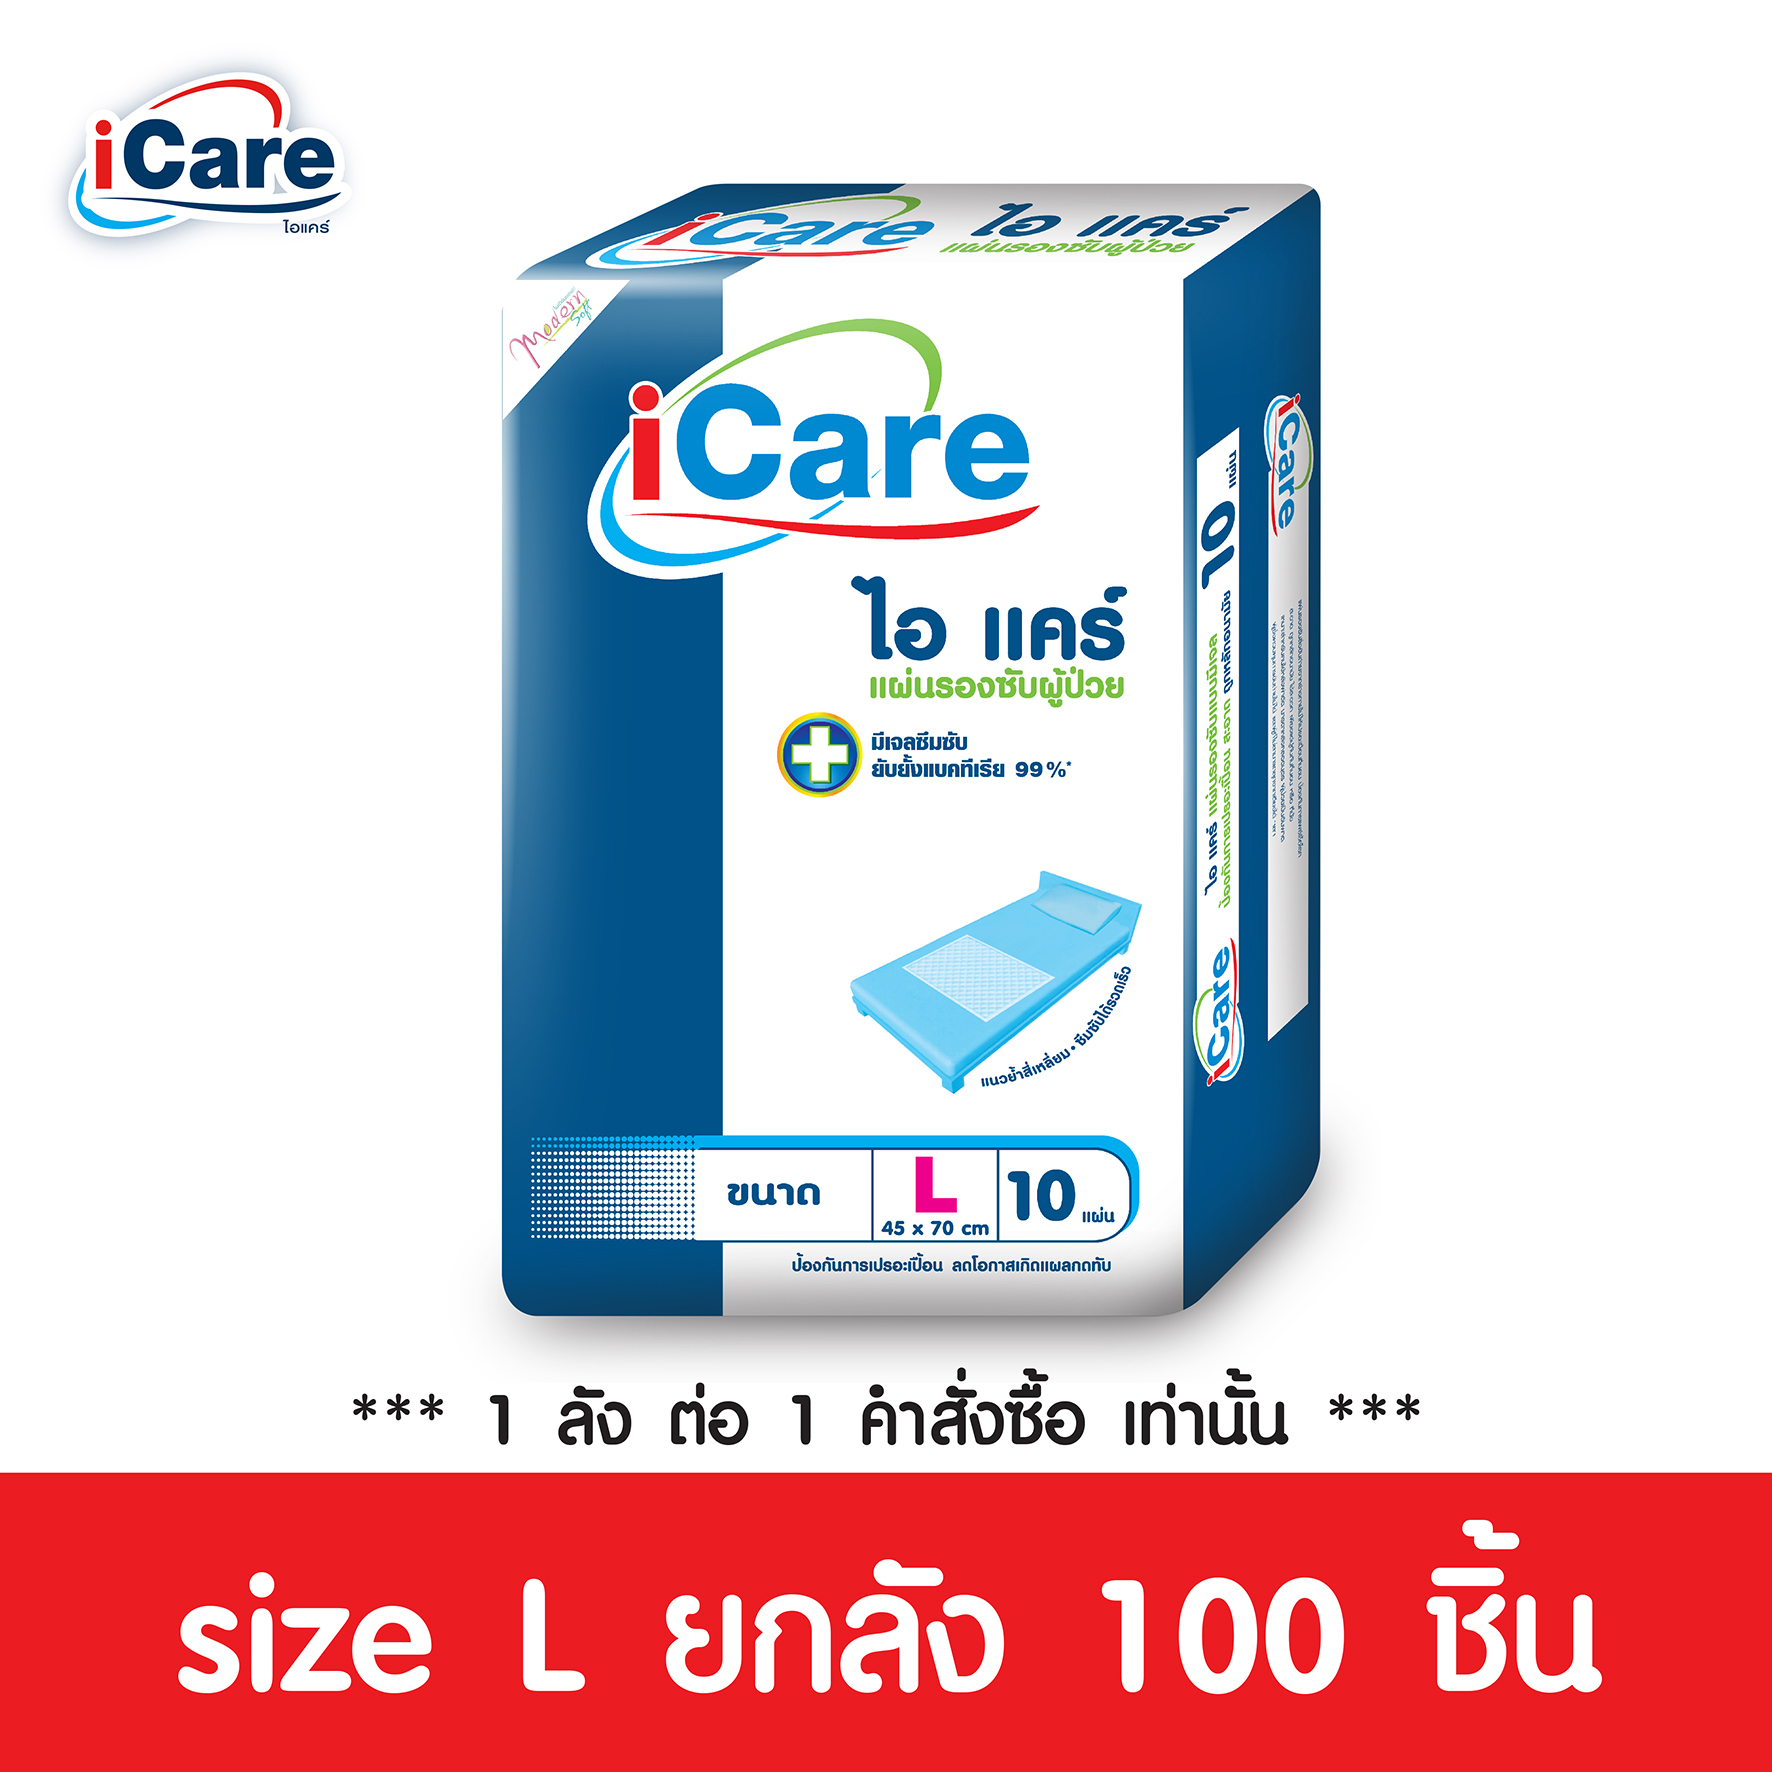 ส่งฟรี!ทั่วไทย iCare แผ่นรองซับผู้ใหญ่ไอแคร์ ไซส์ L 10 ชิ้น ขนาด 45 x 70 cm. ยกลัง 100 ชิ้น *** 1 ลัง/คำสั่งซื้อ เท่านั้น ***